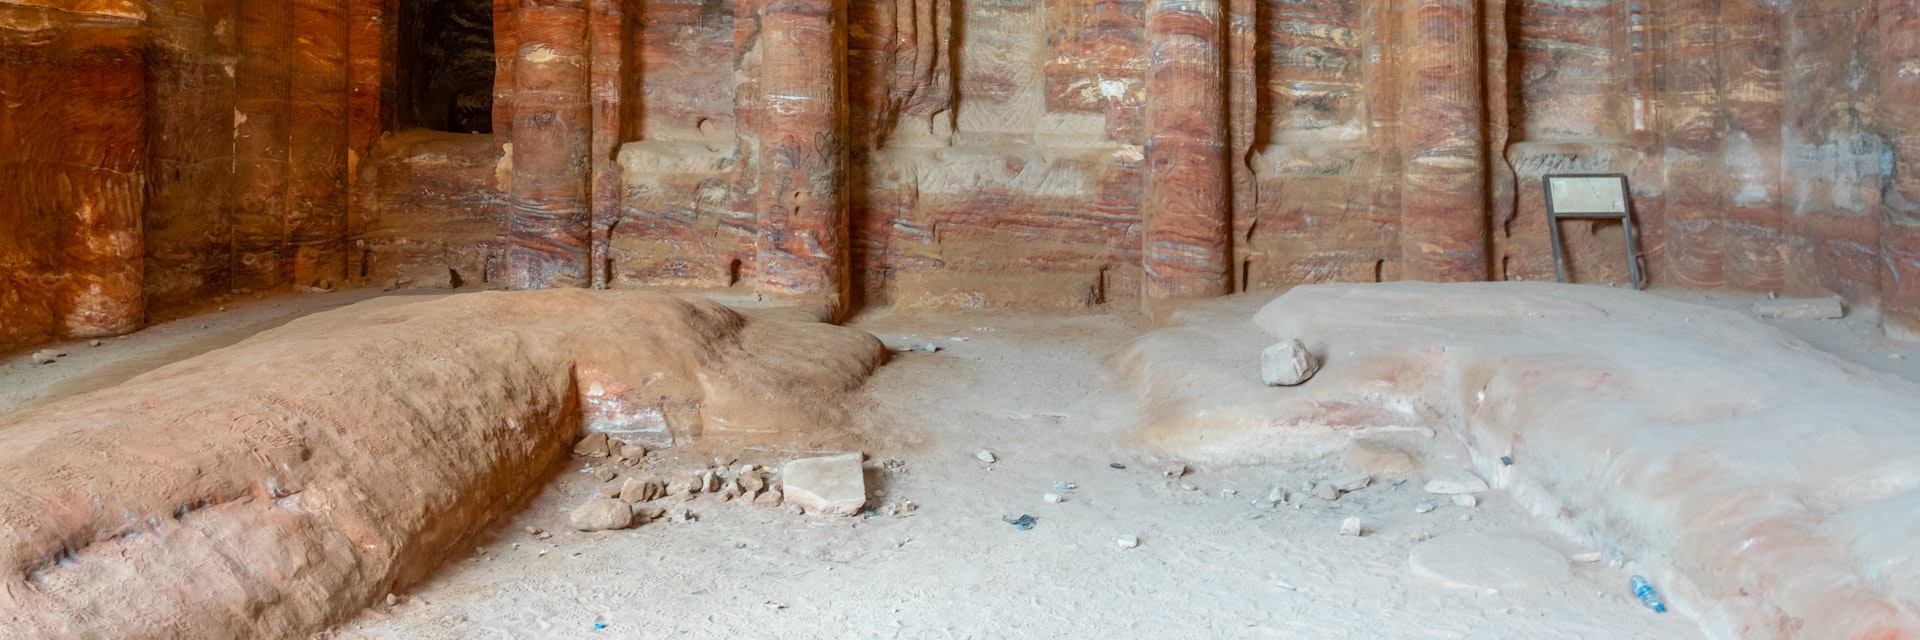 Garden tomb and triclinium at Petra, Jordan.